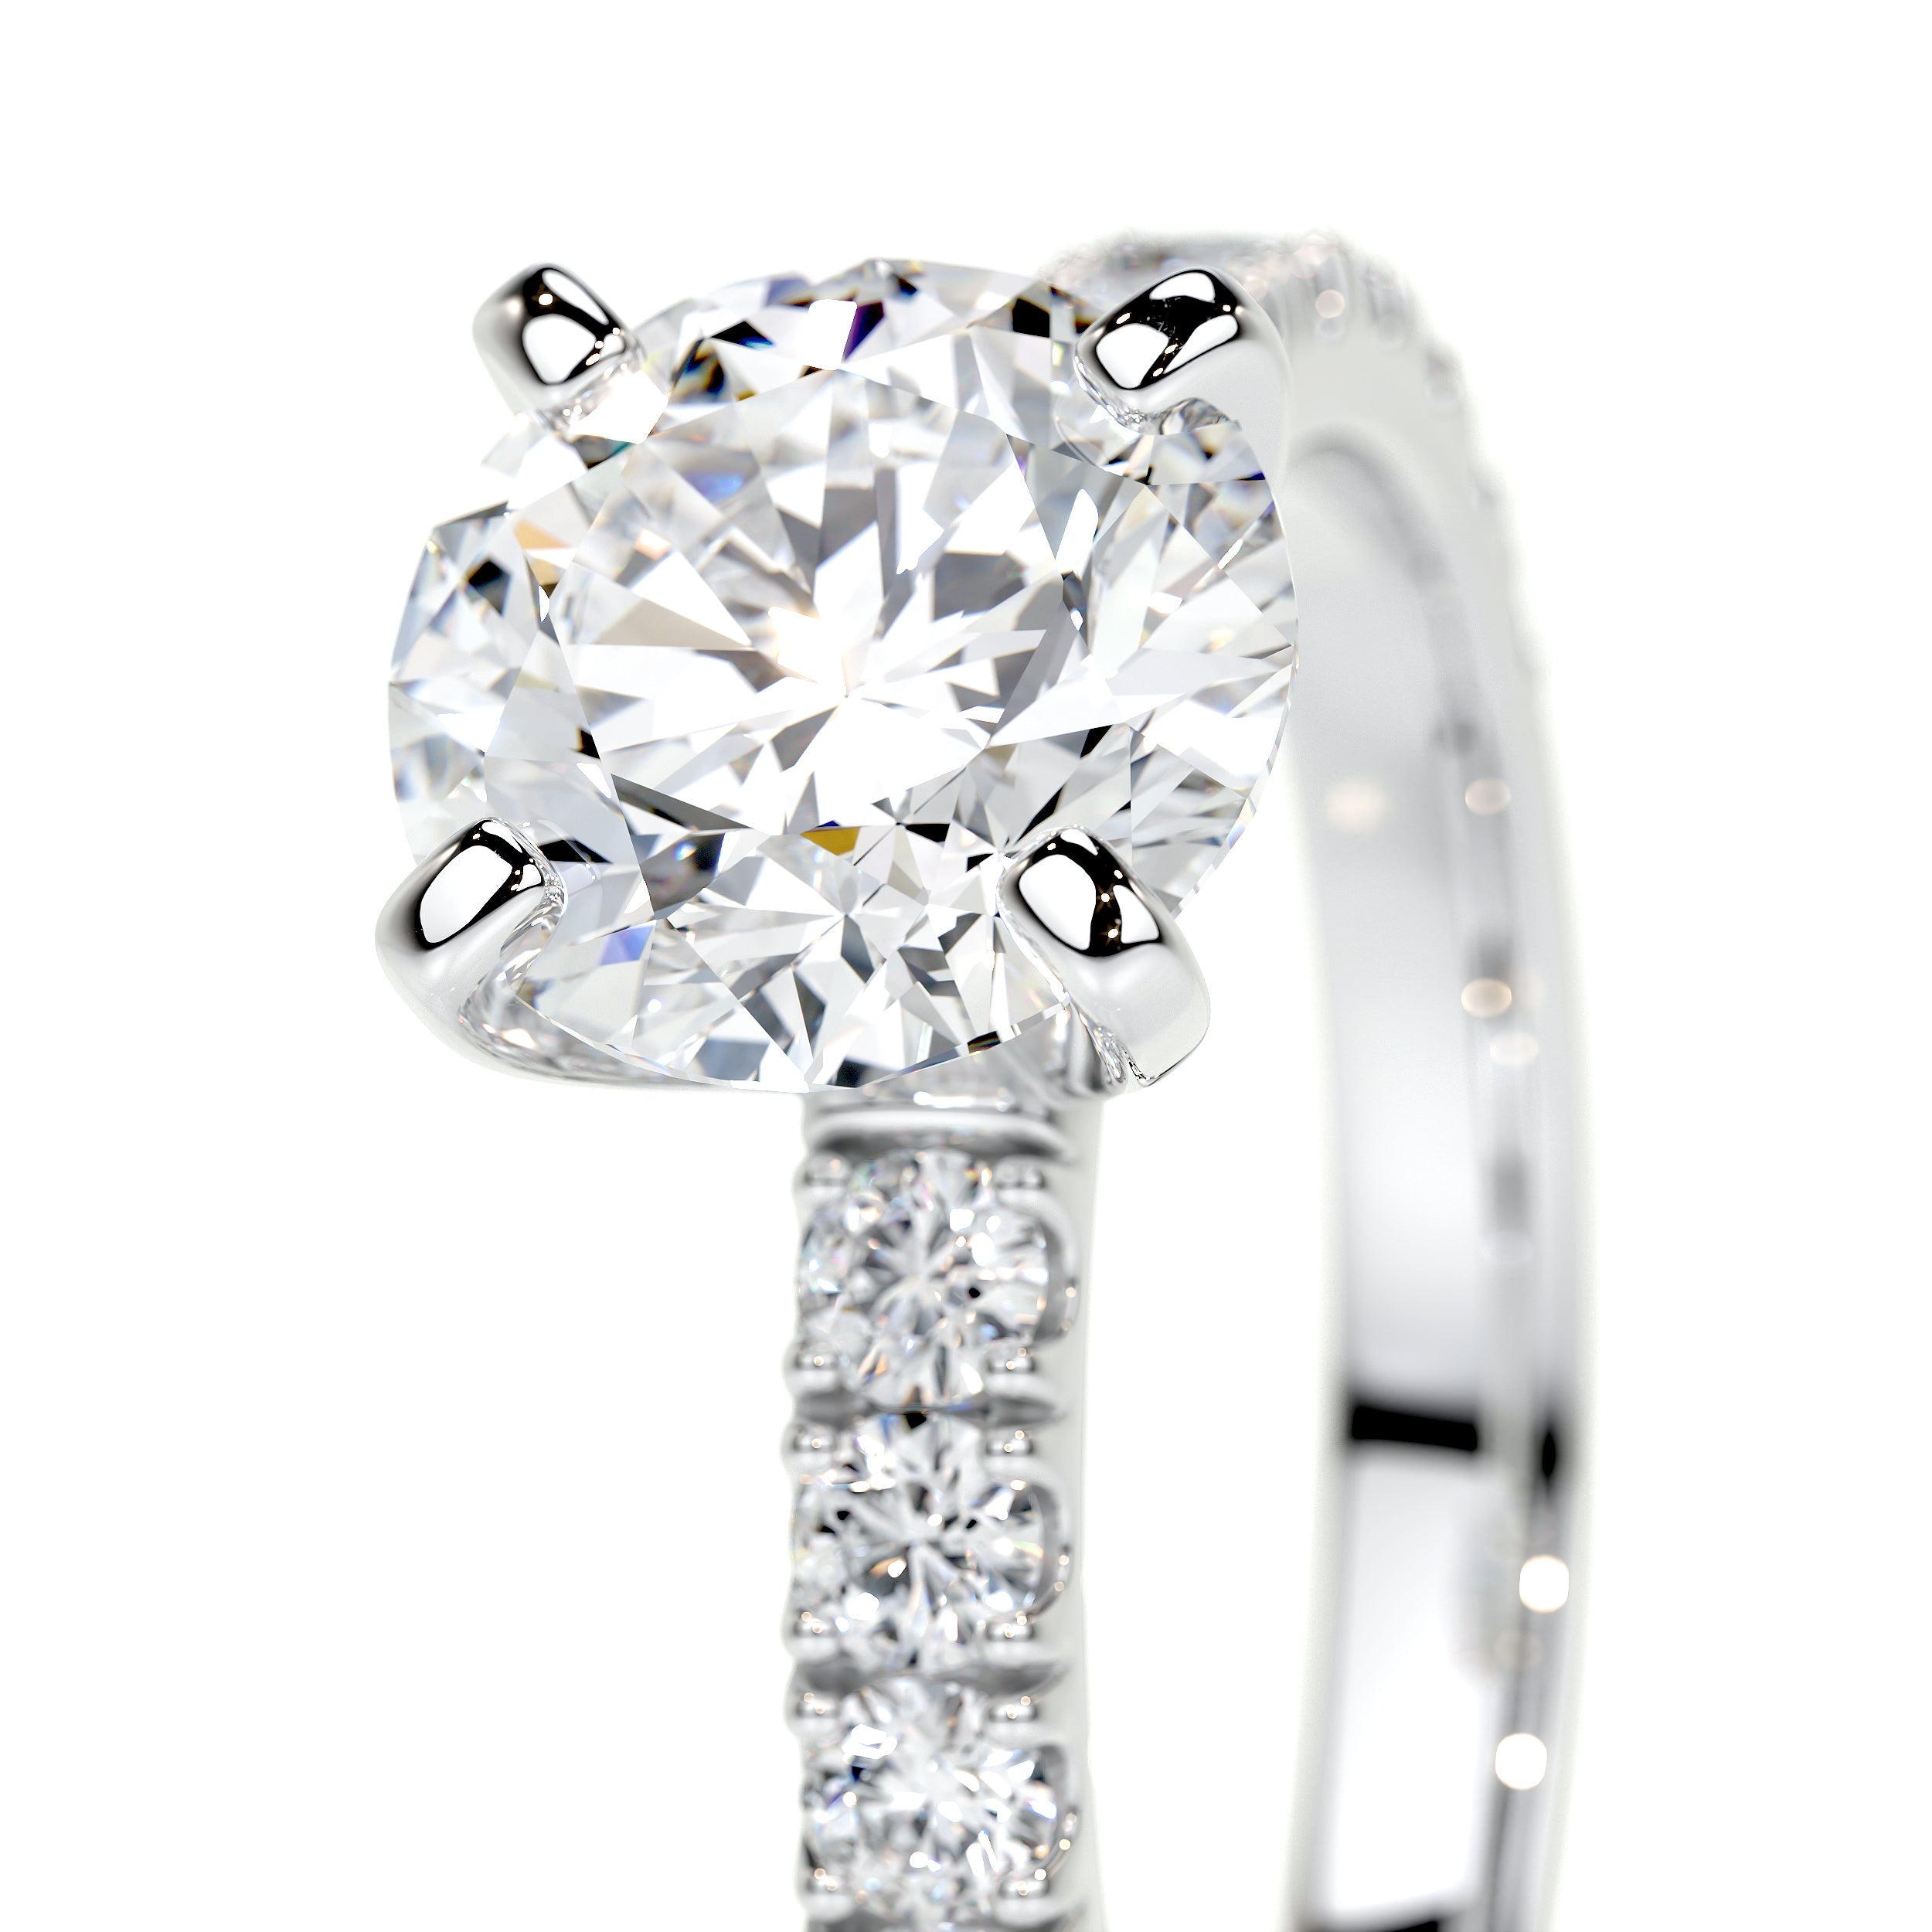 Alison Lab Grown Diamond Ring   (2 Carat) -18K White Gold